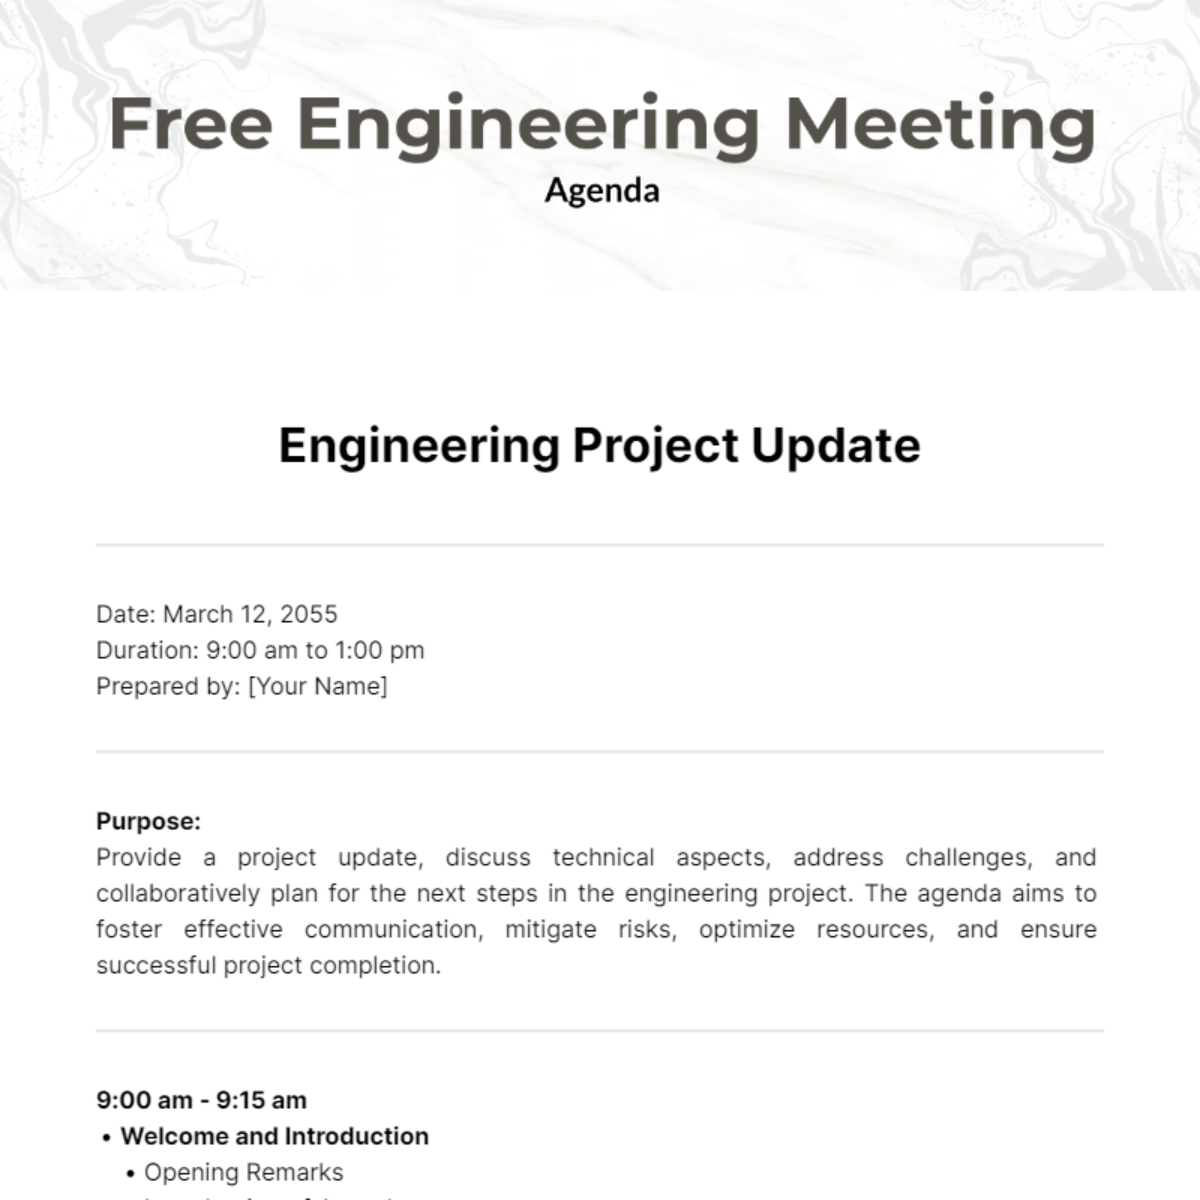 Free Engineering Meeting Agenda Template